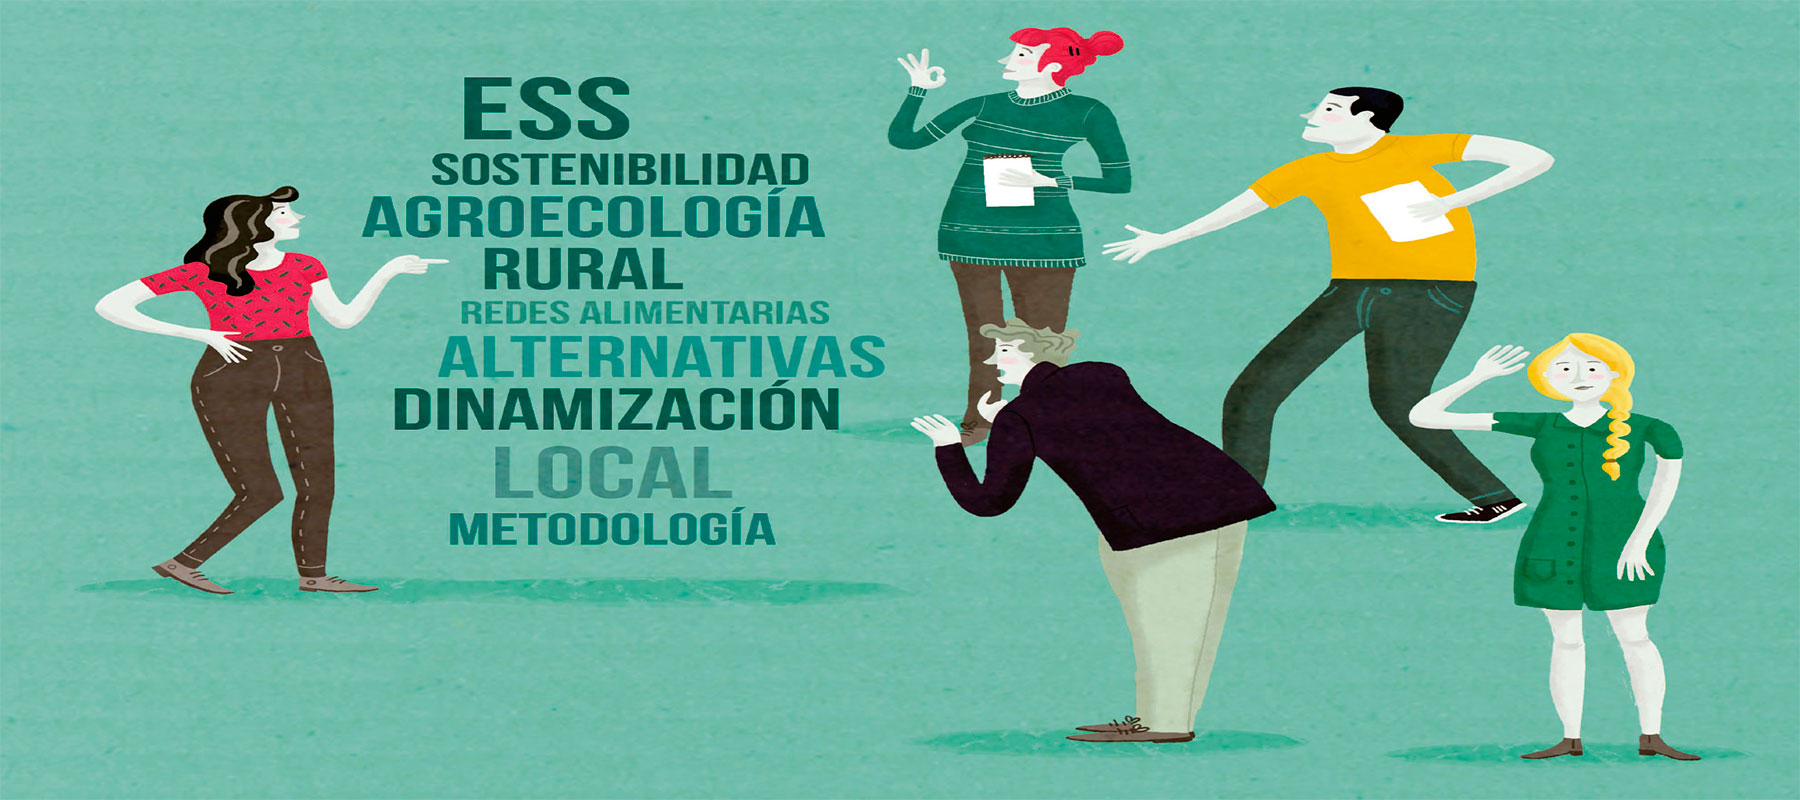 Dinamización local y metodologías participativas para la Economía Social y Solidaria en el medio rural